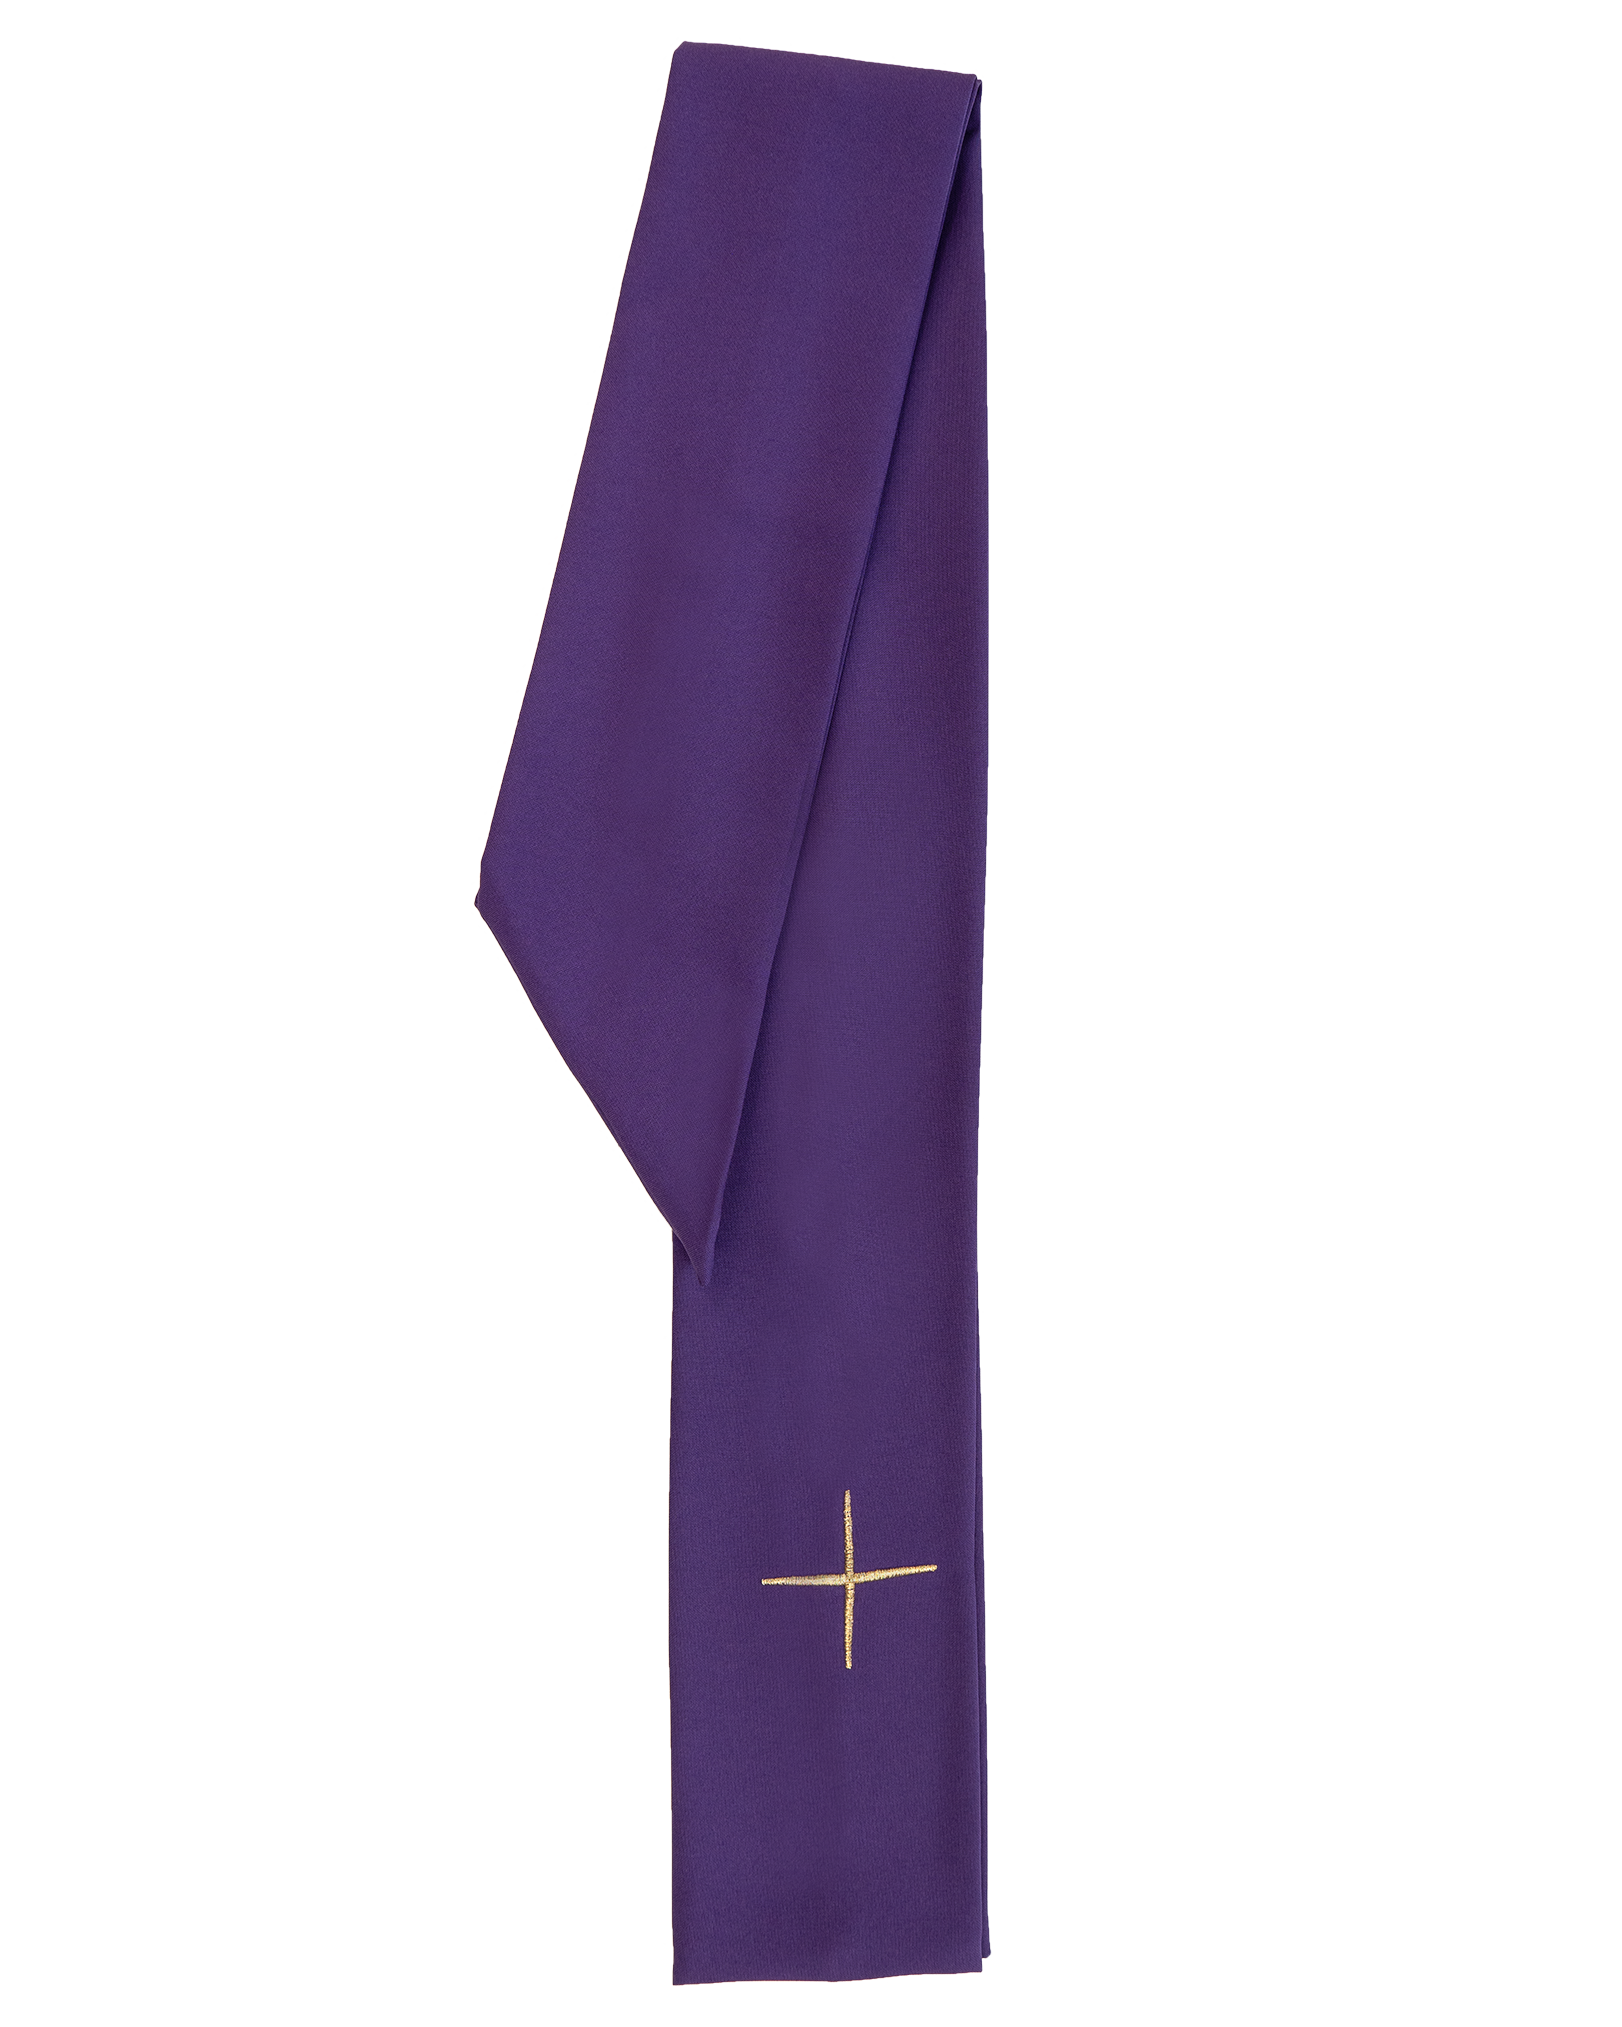 Ornat haftowany z symbolem krzyża KOR/227 Fioletowy